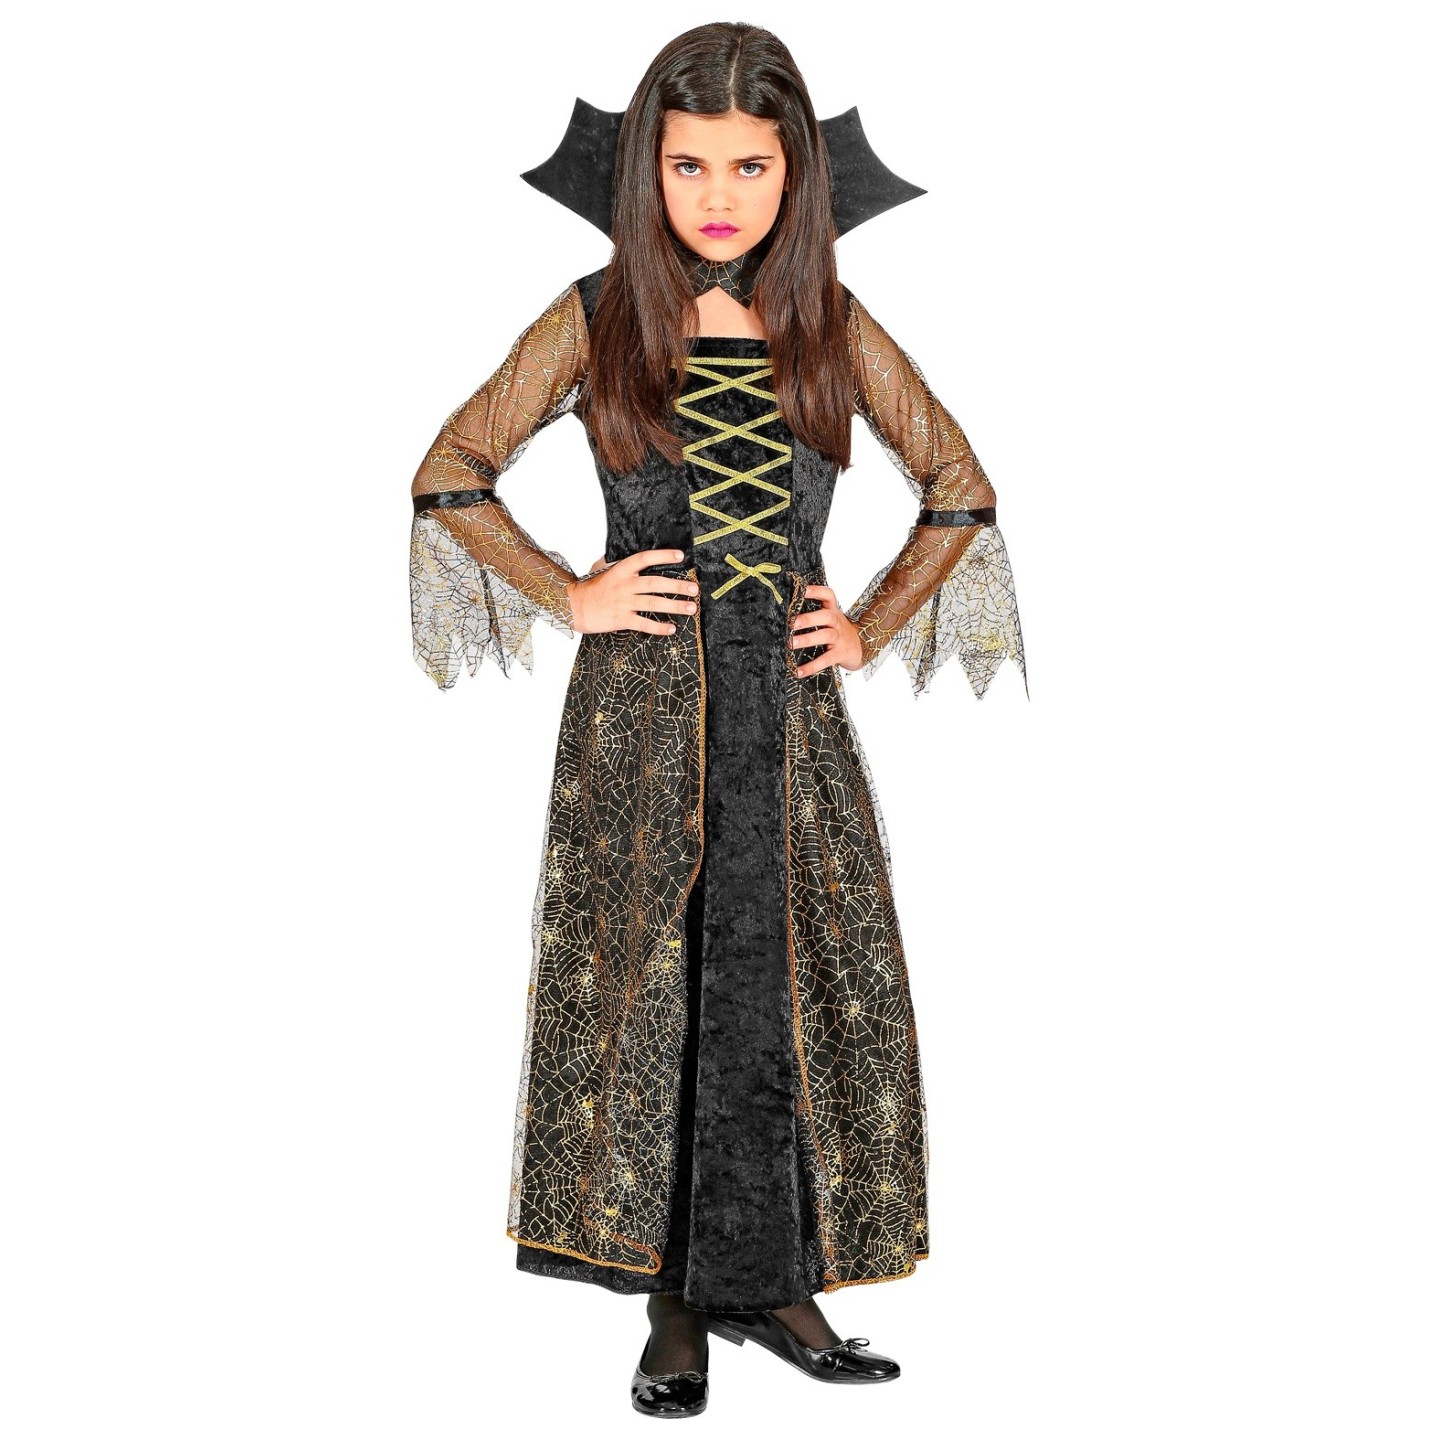 Ongebruikt Heksen kostuum kind kopen ? | Jokershop.be - Halloween pakjes kind FN-48